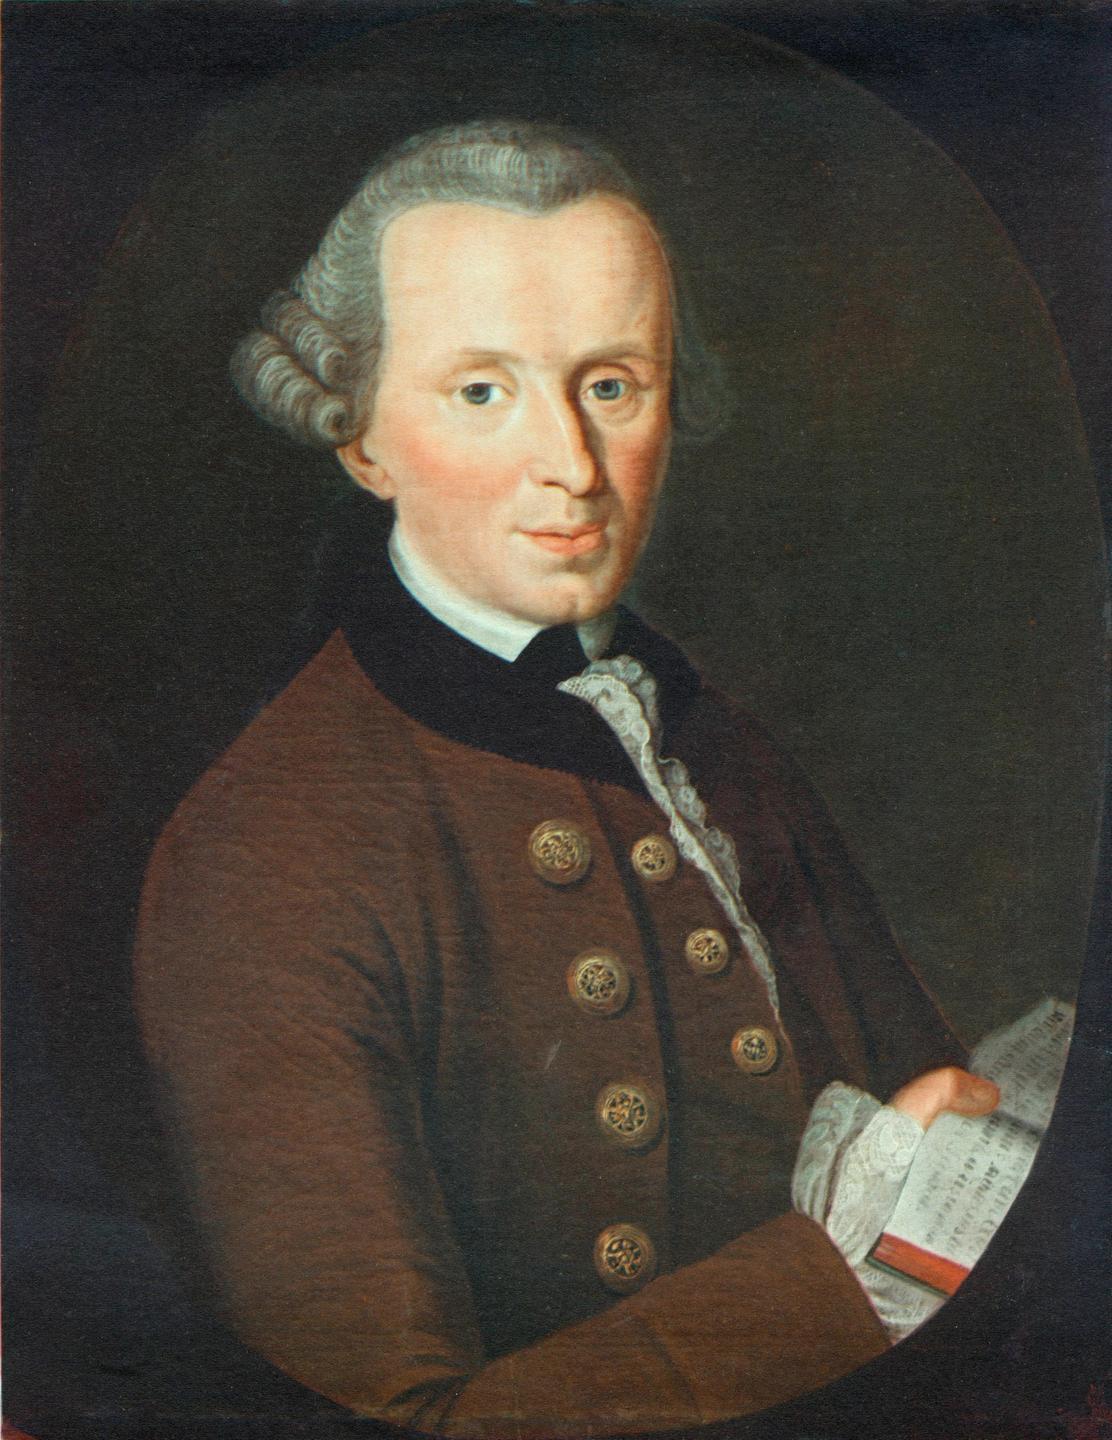 Ölgemälde zeigt einen Mann mit weißem Haar: Gemälde des Philosophen Immanuel Kant